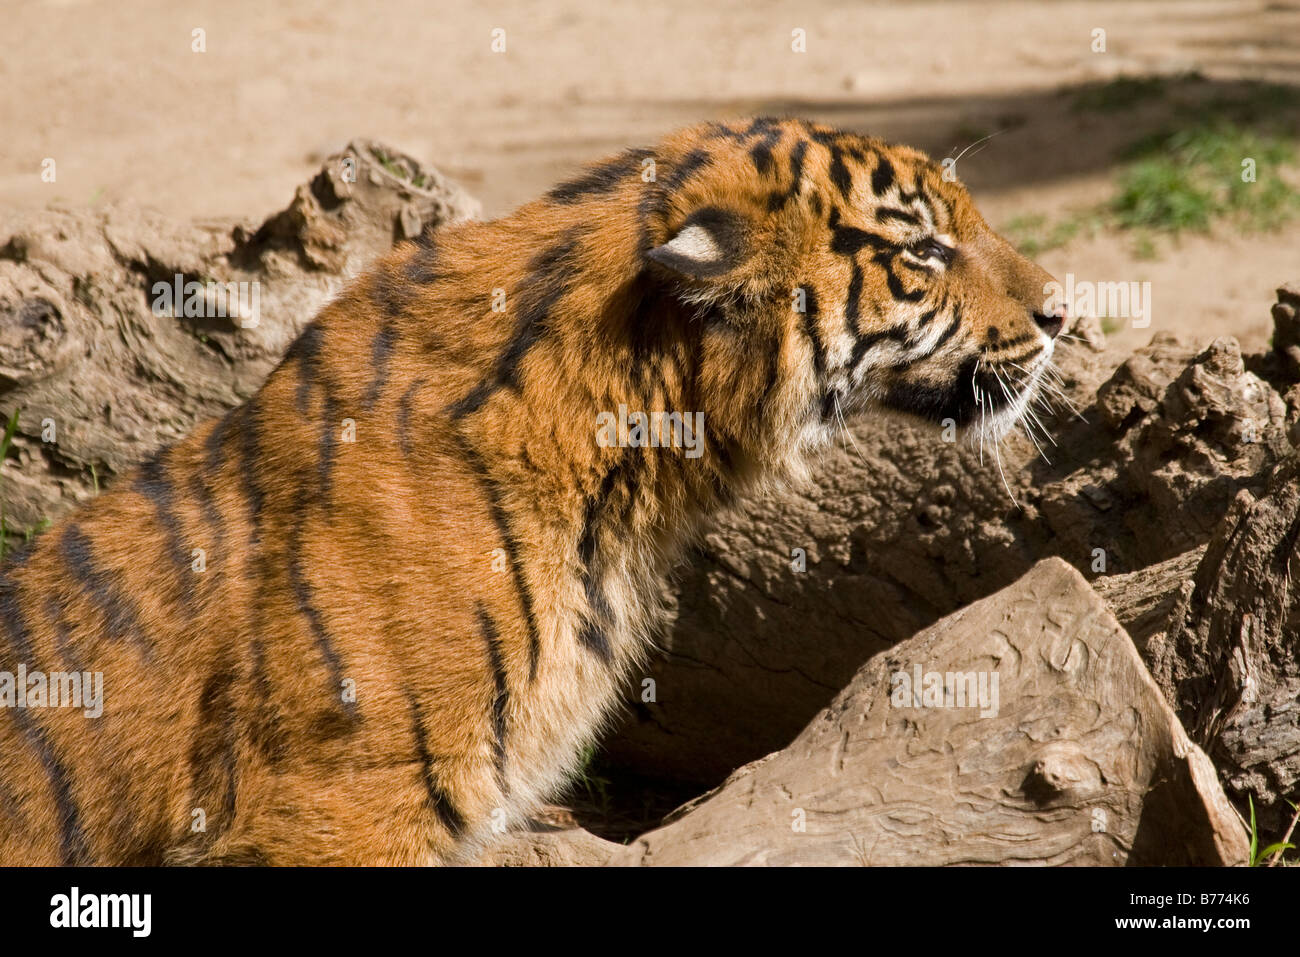 La tigre di Sumatra cub piccioli i suoi gemelli in cattività Foto Stock